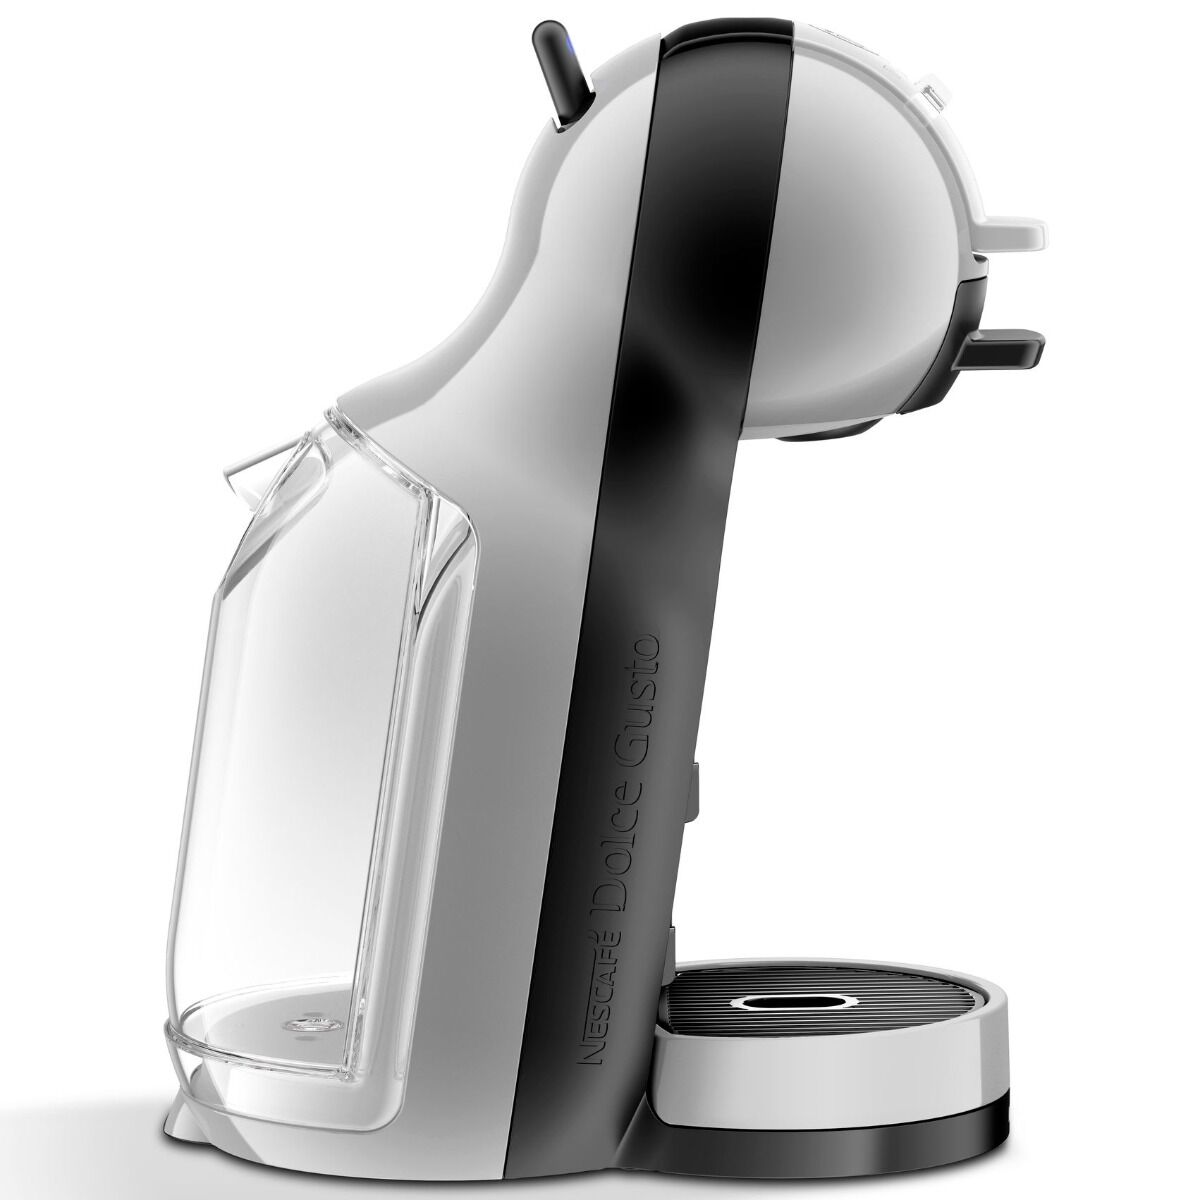 Espressor Krups Nescafe Dolce Gusto Mini-Me, 1500 W, 0.8 l, 15 bari, Negru/Argintiu